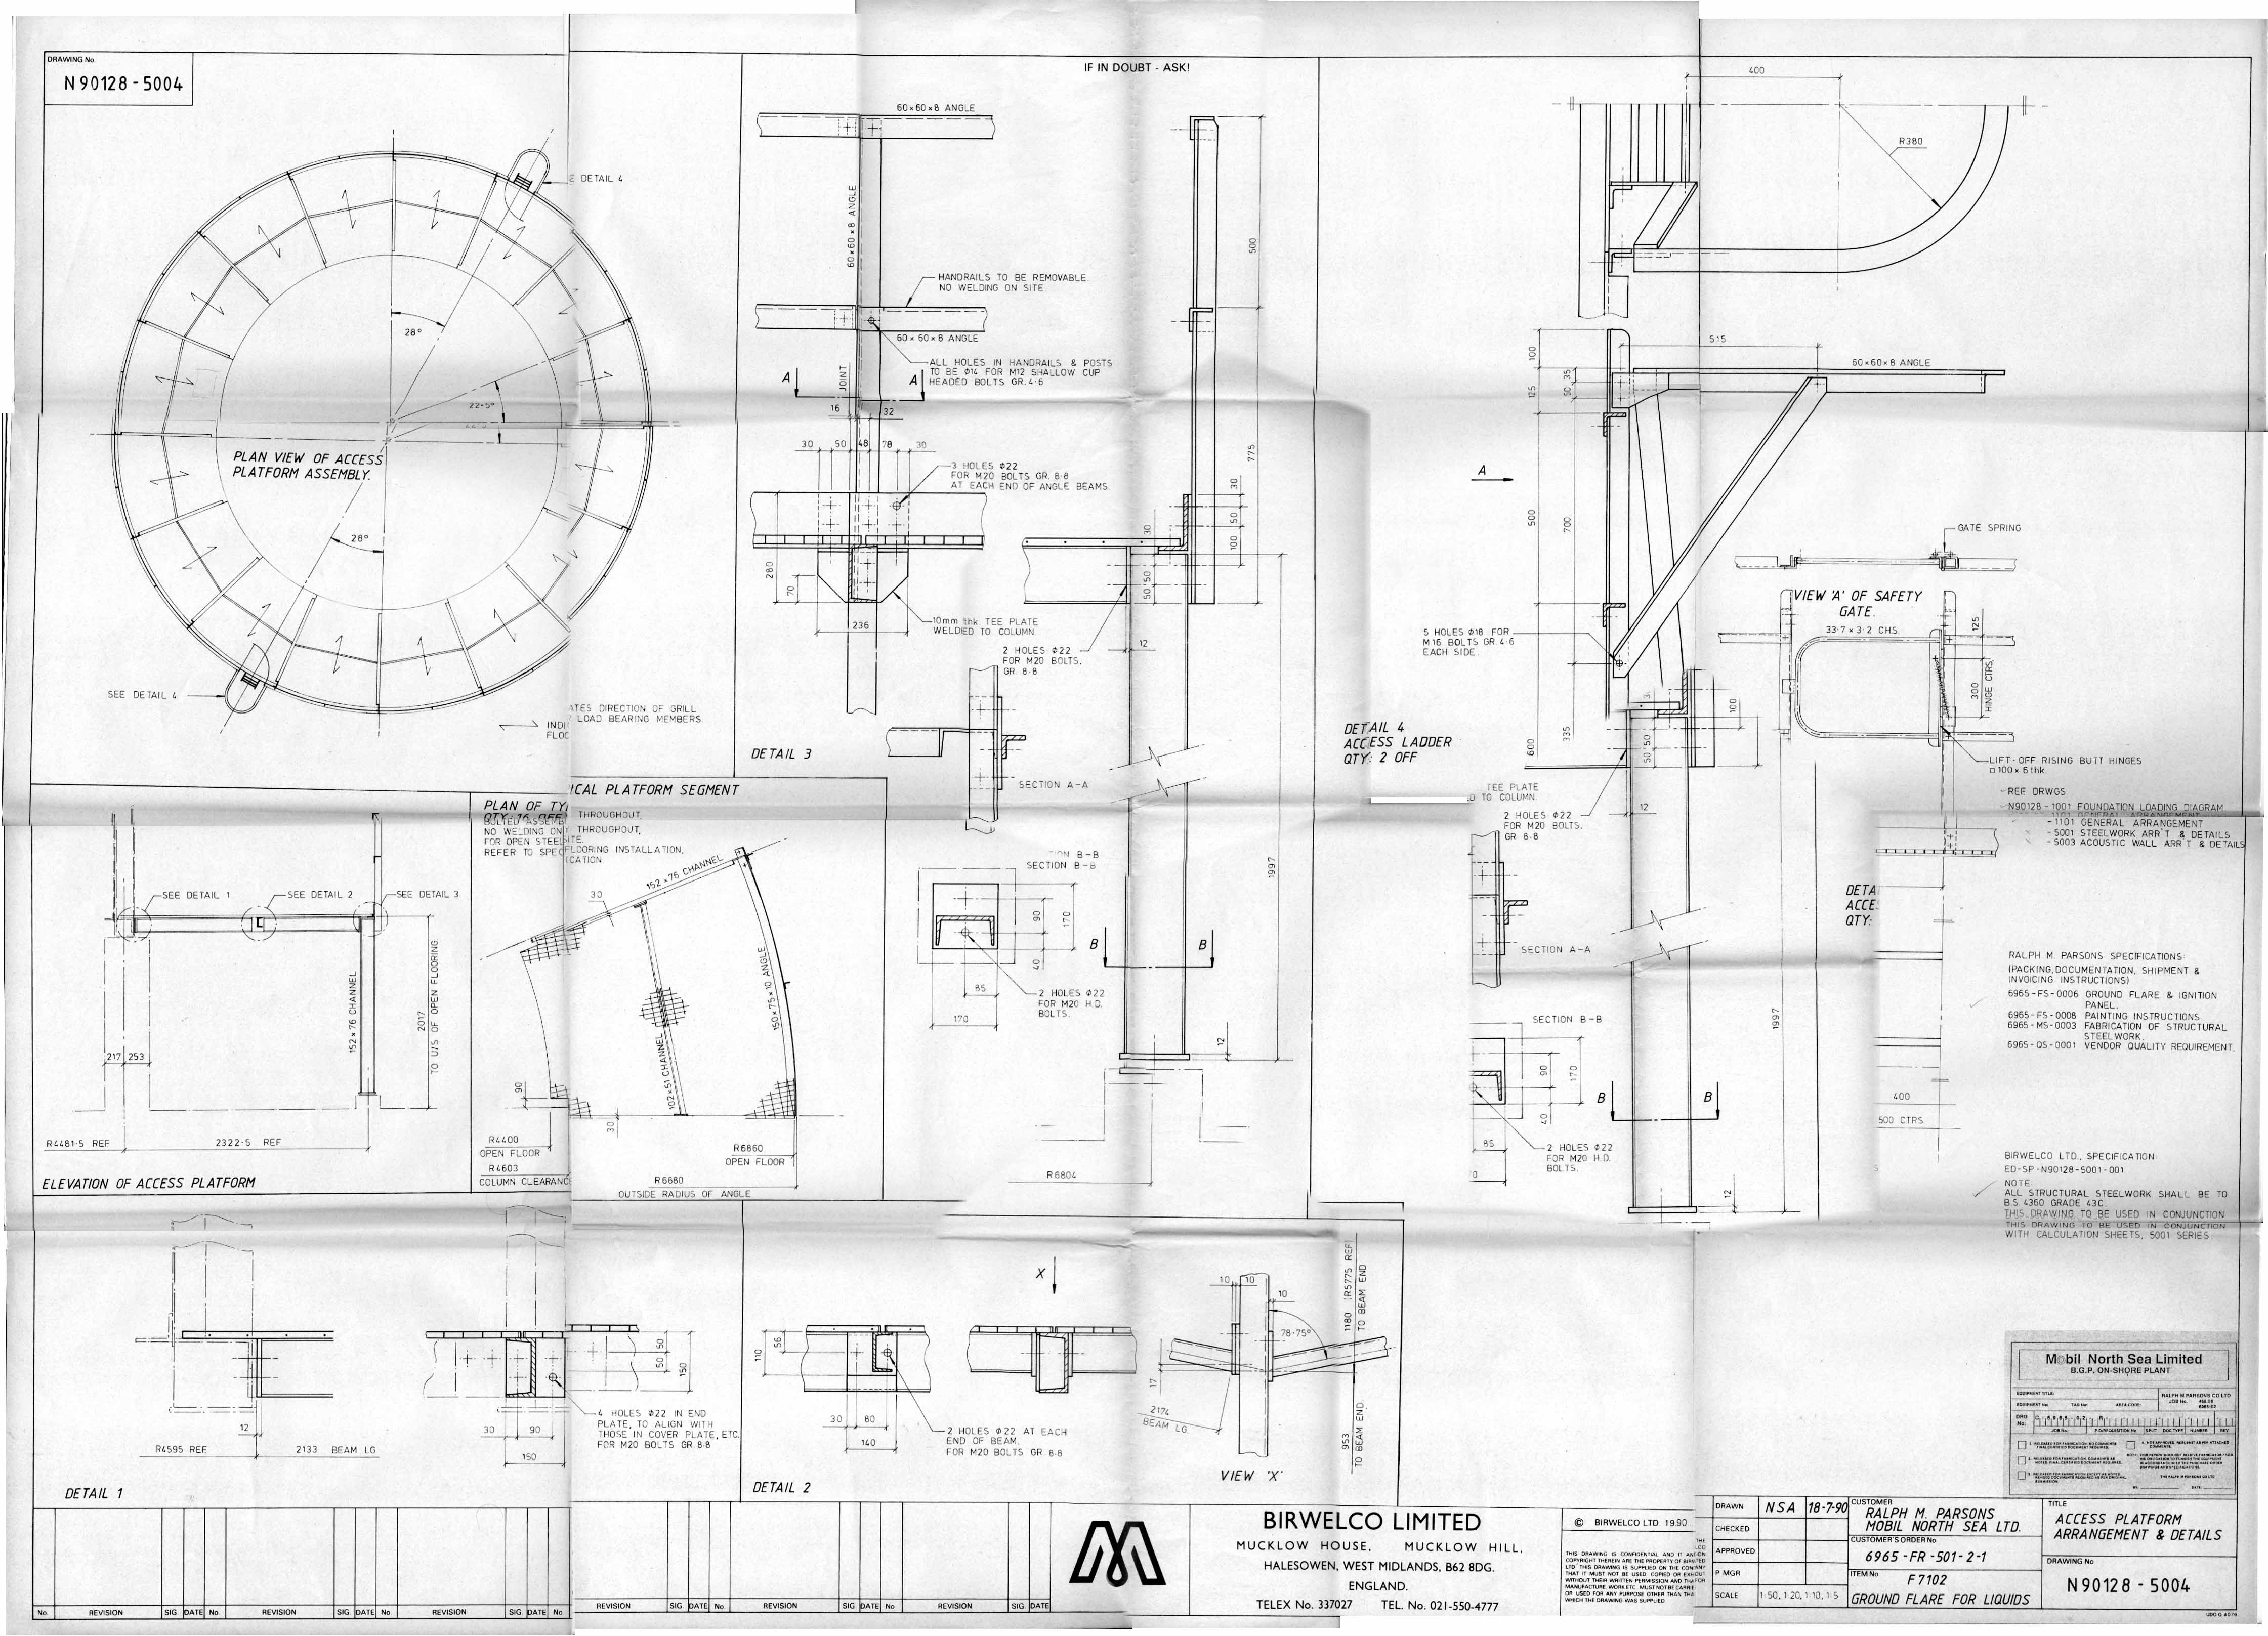 Images Ed 1994 Engineering Drawings/image013.jpg